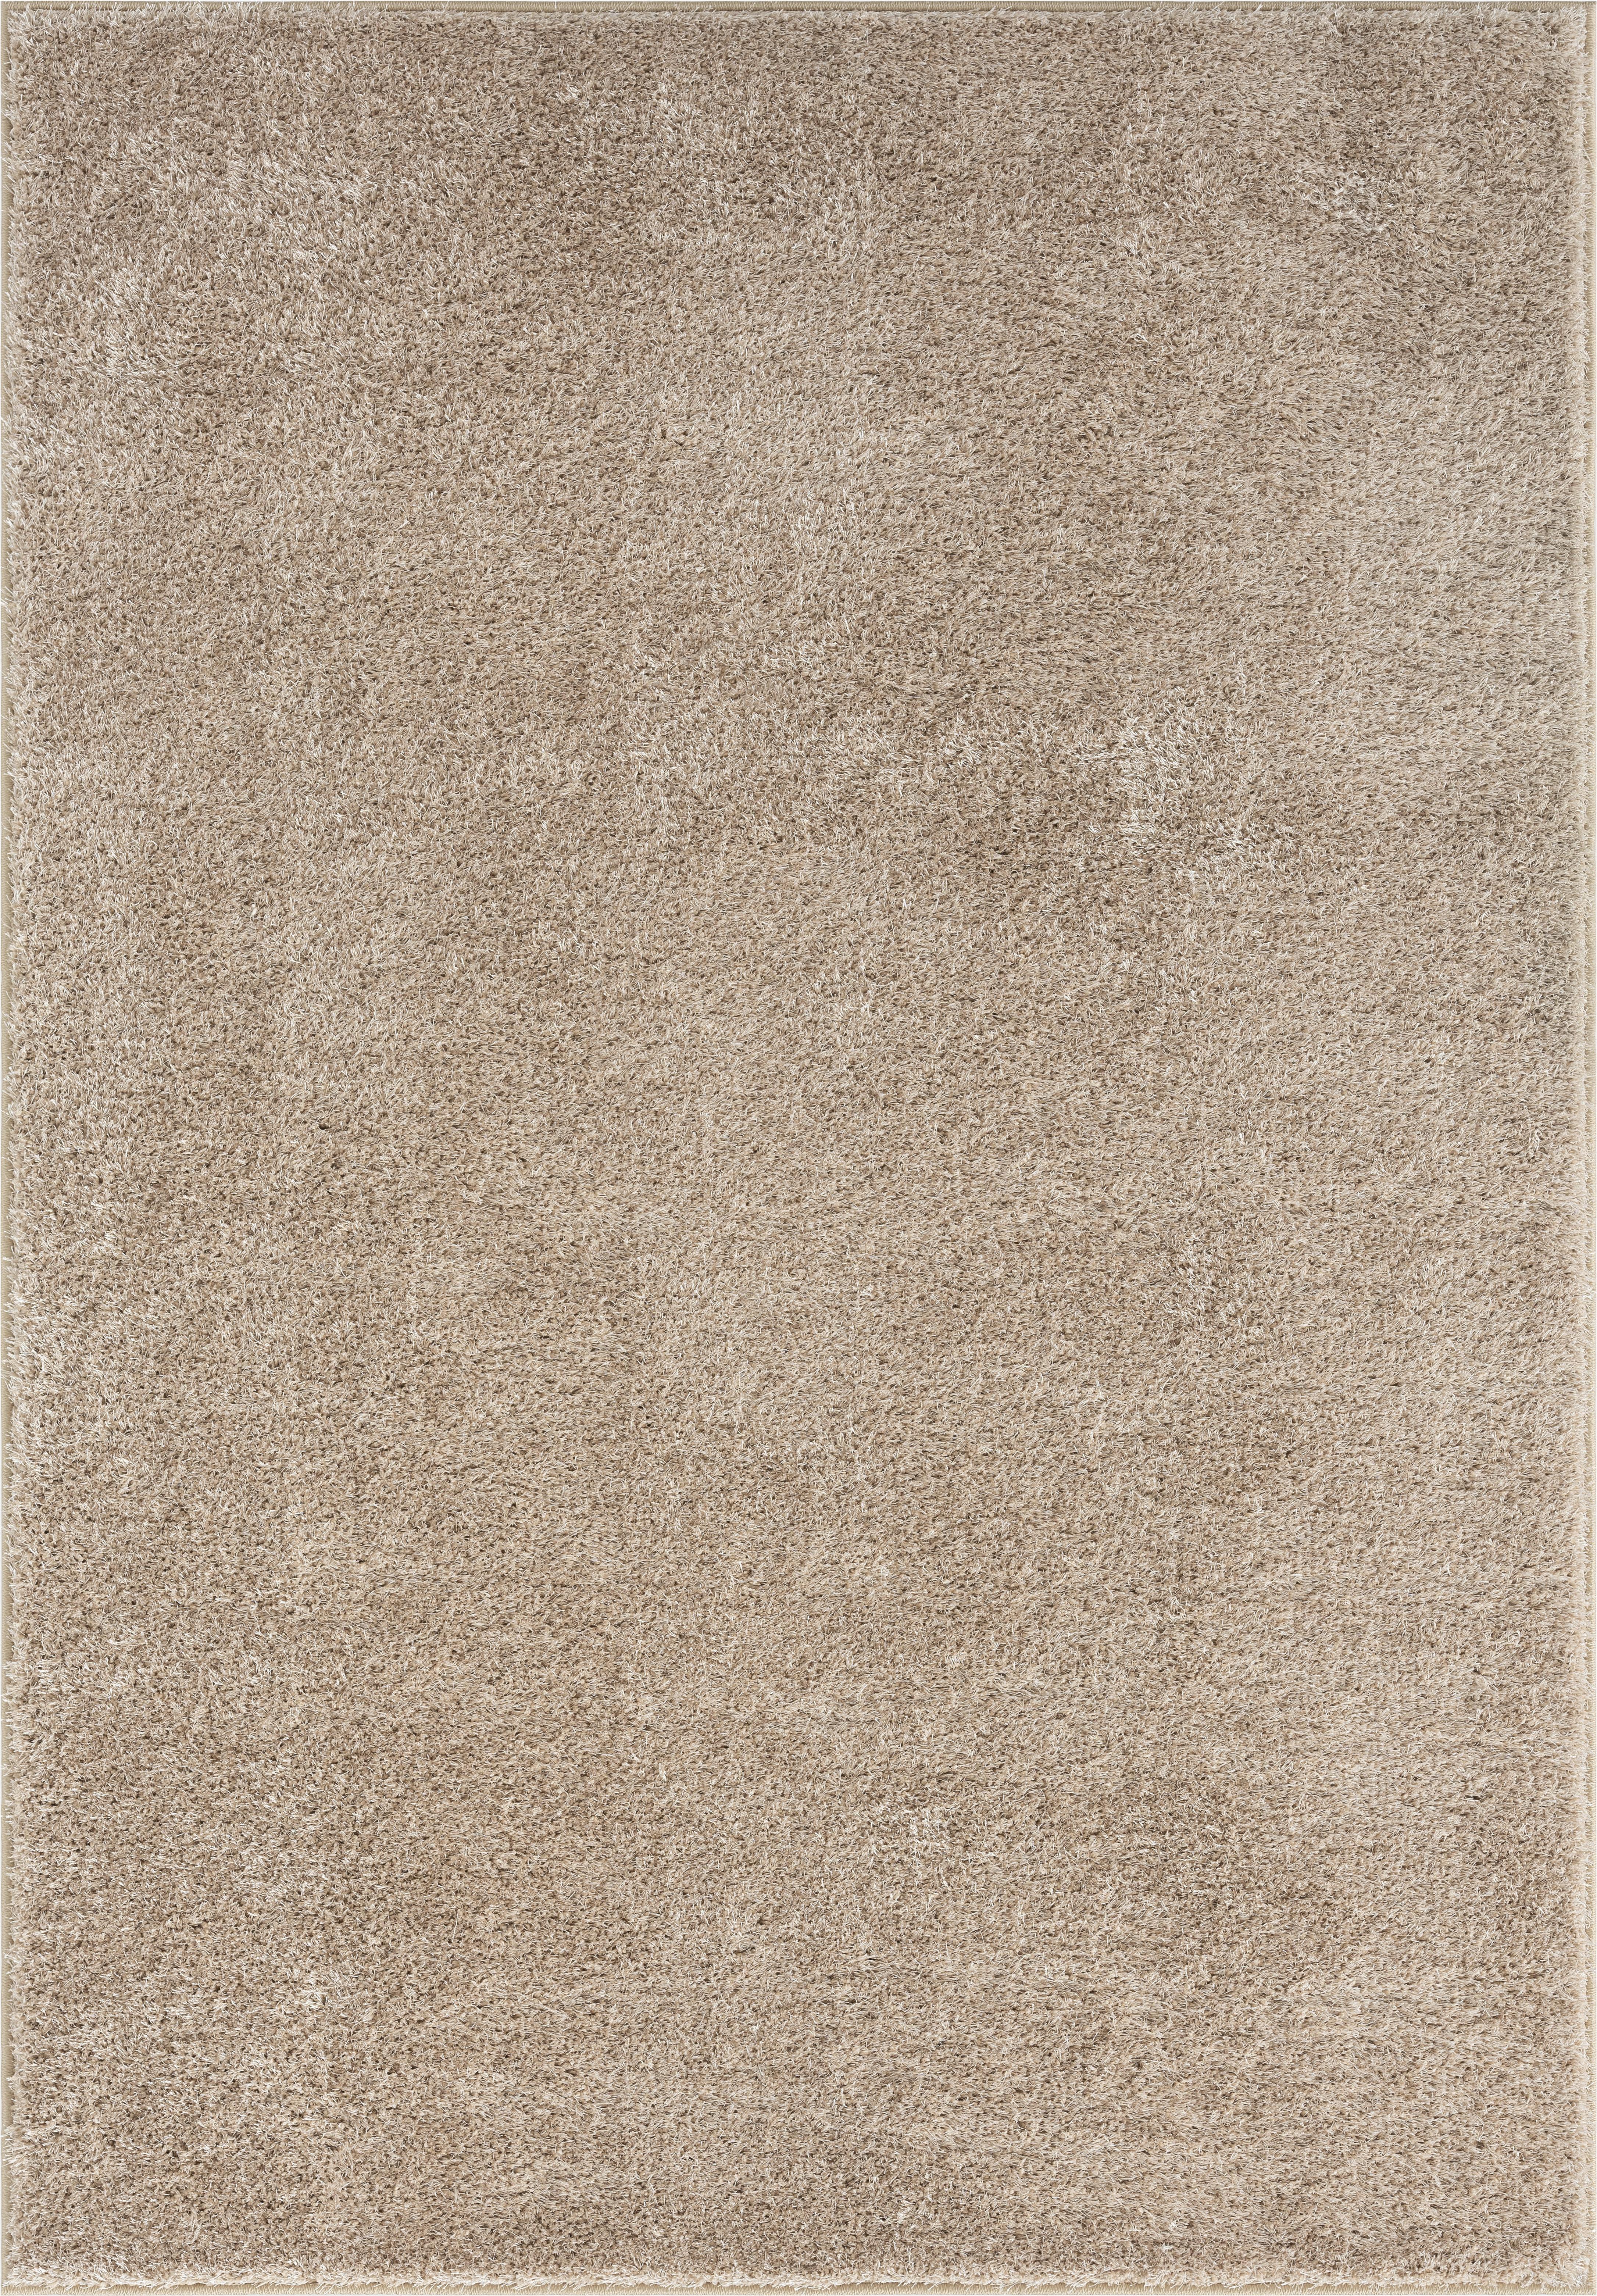 Hochflor Teppich Beige Tessa 120x170 cm - Beige, Basics, Textil (120/170cm) - Luca Bessoni